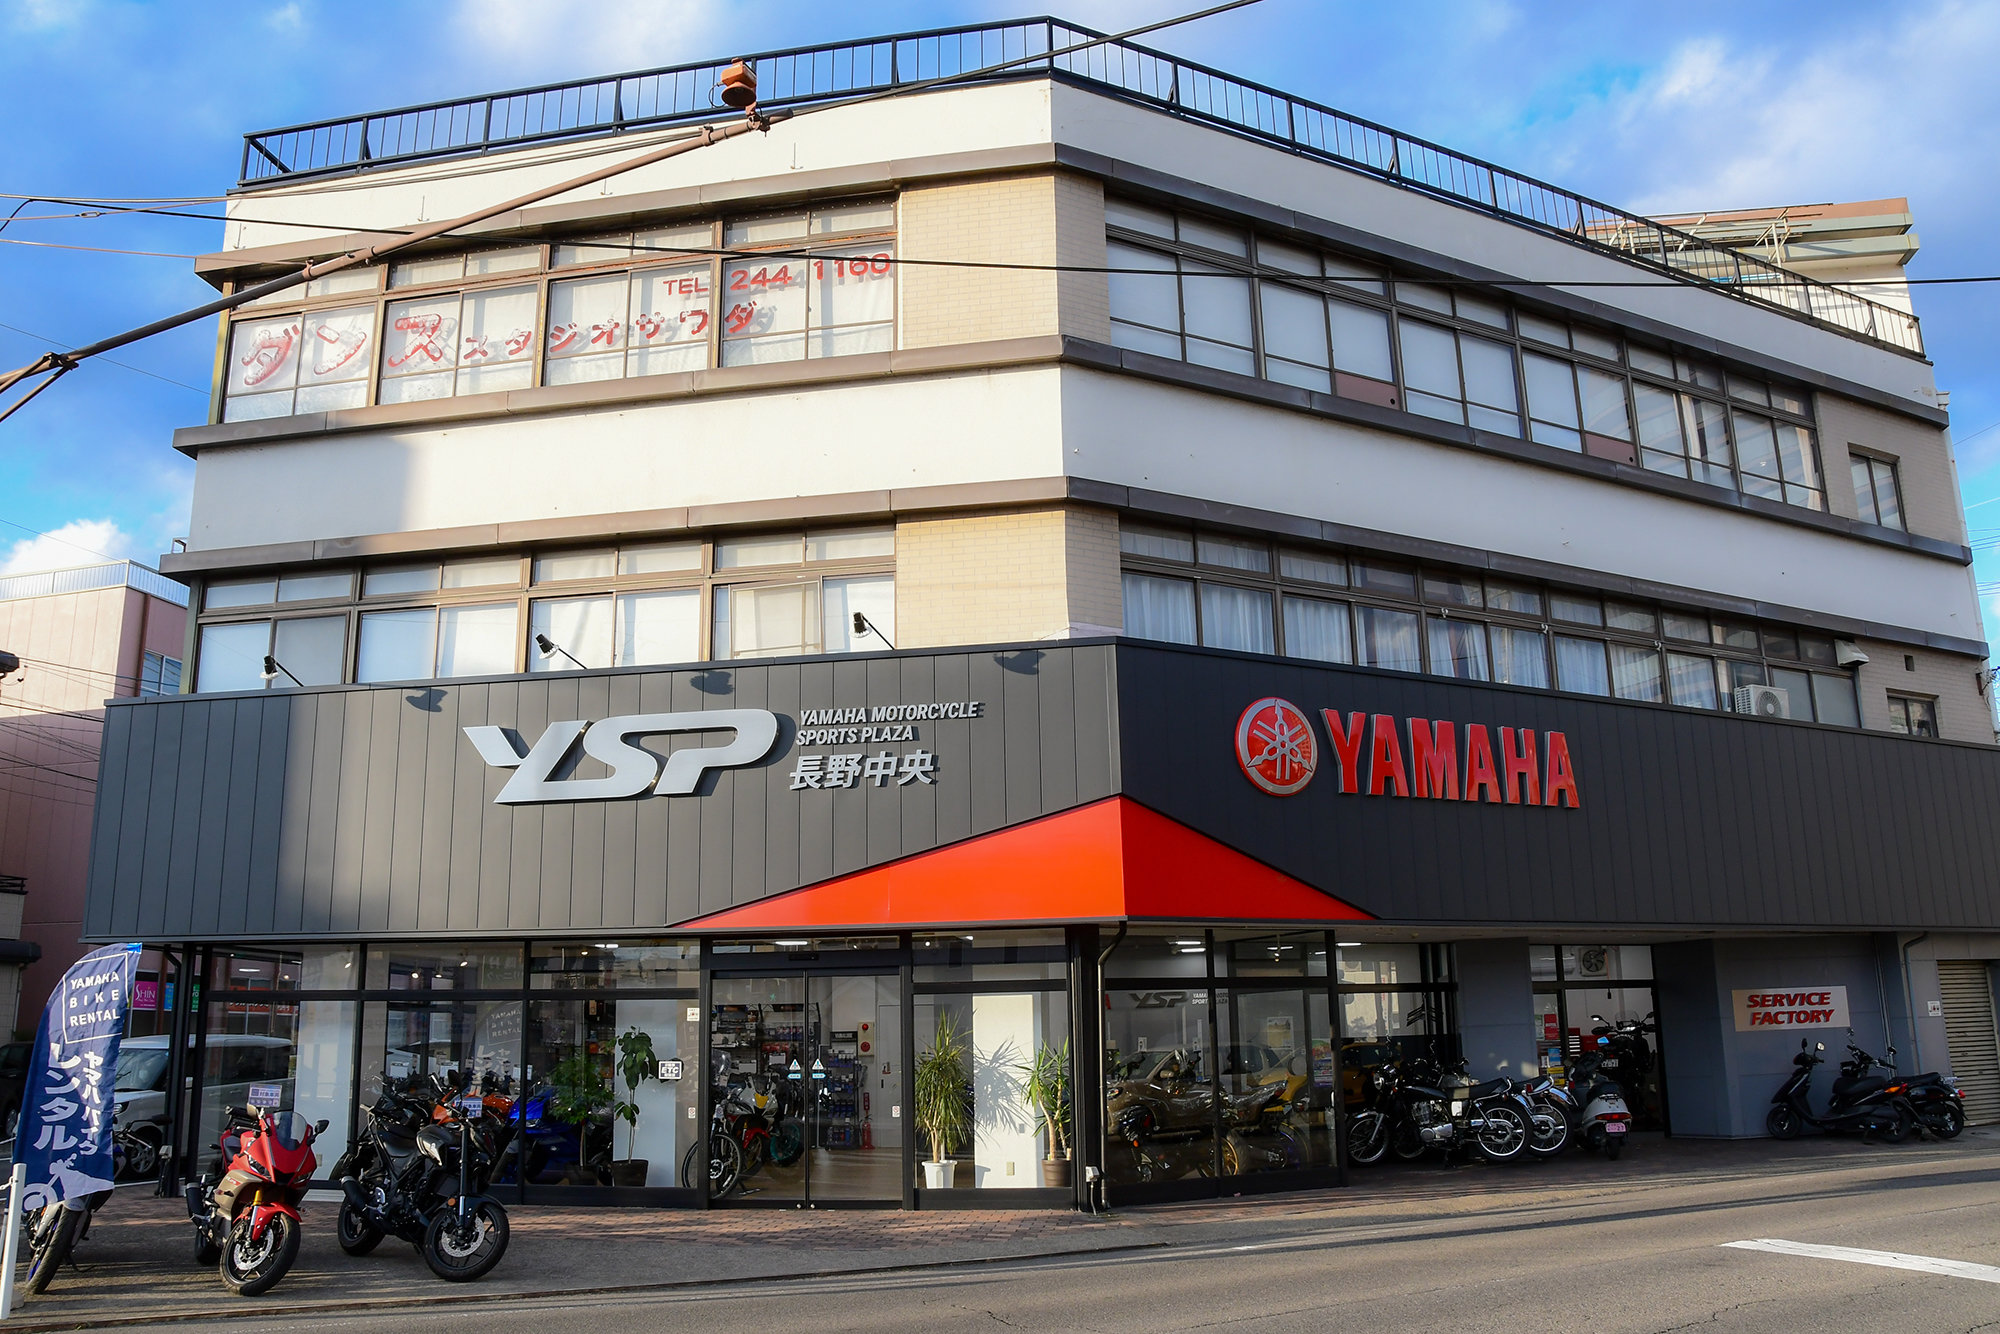 ヤマハを愛するすべてのお客さまに「最高のブランド体験」をお約束するヤマハスポーツバイク※専門店「YSP」。